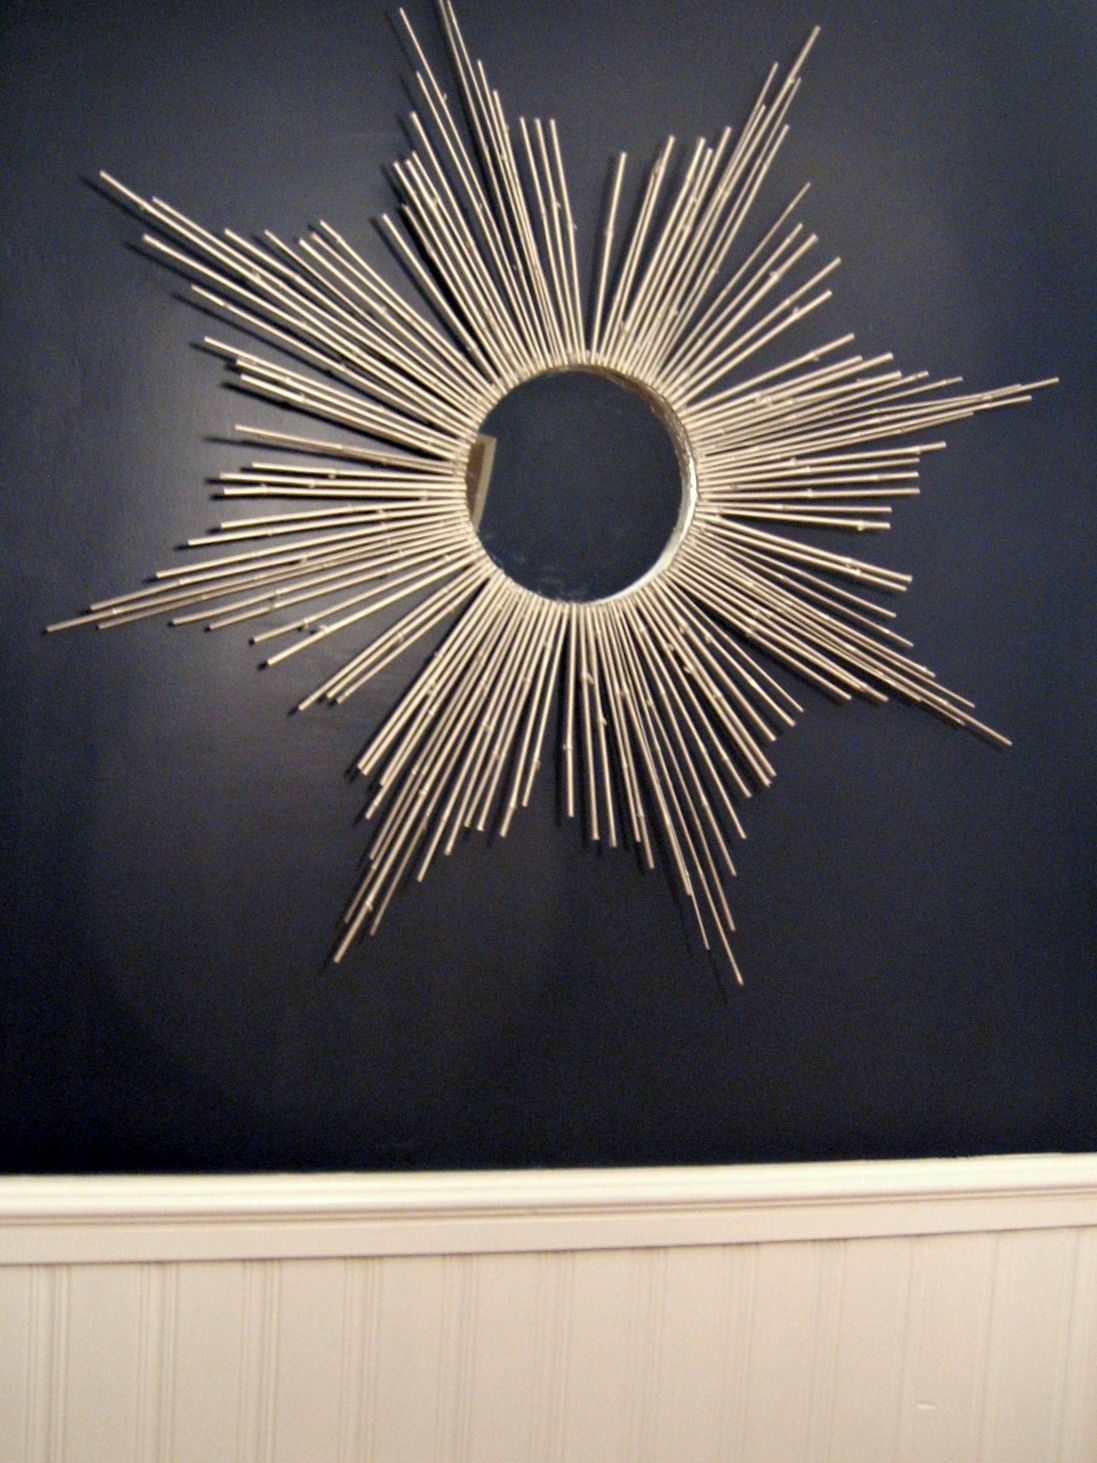 Ten June: {diy} Bamboo Sunburst Mirror Pertaining To Latest Sunburst Mirrored Wall Art (View 19 of 20)